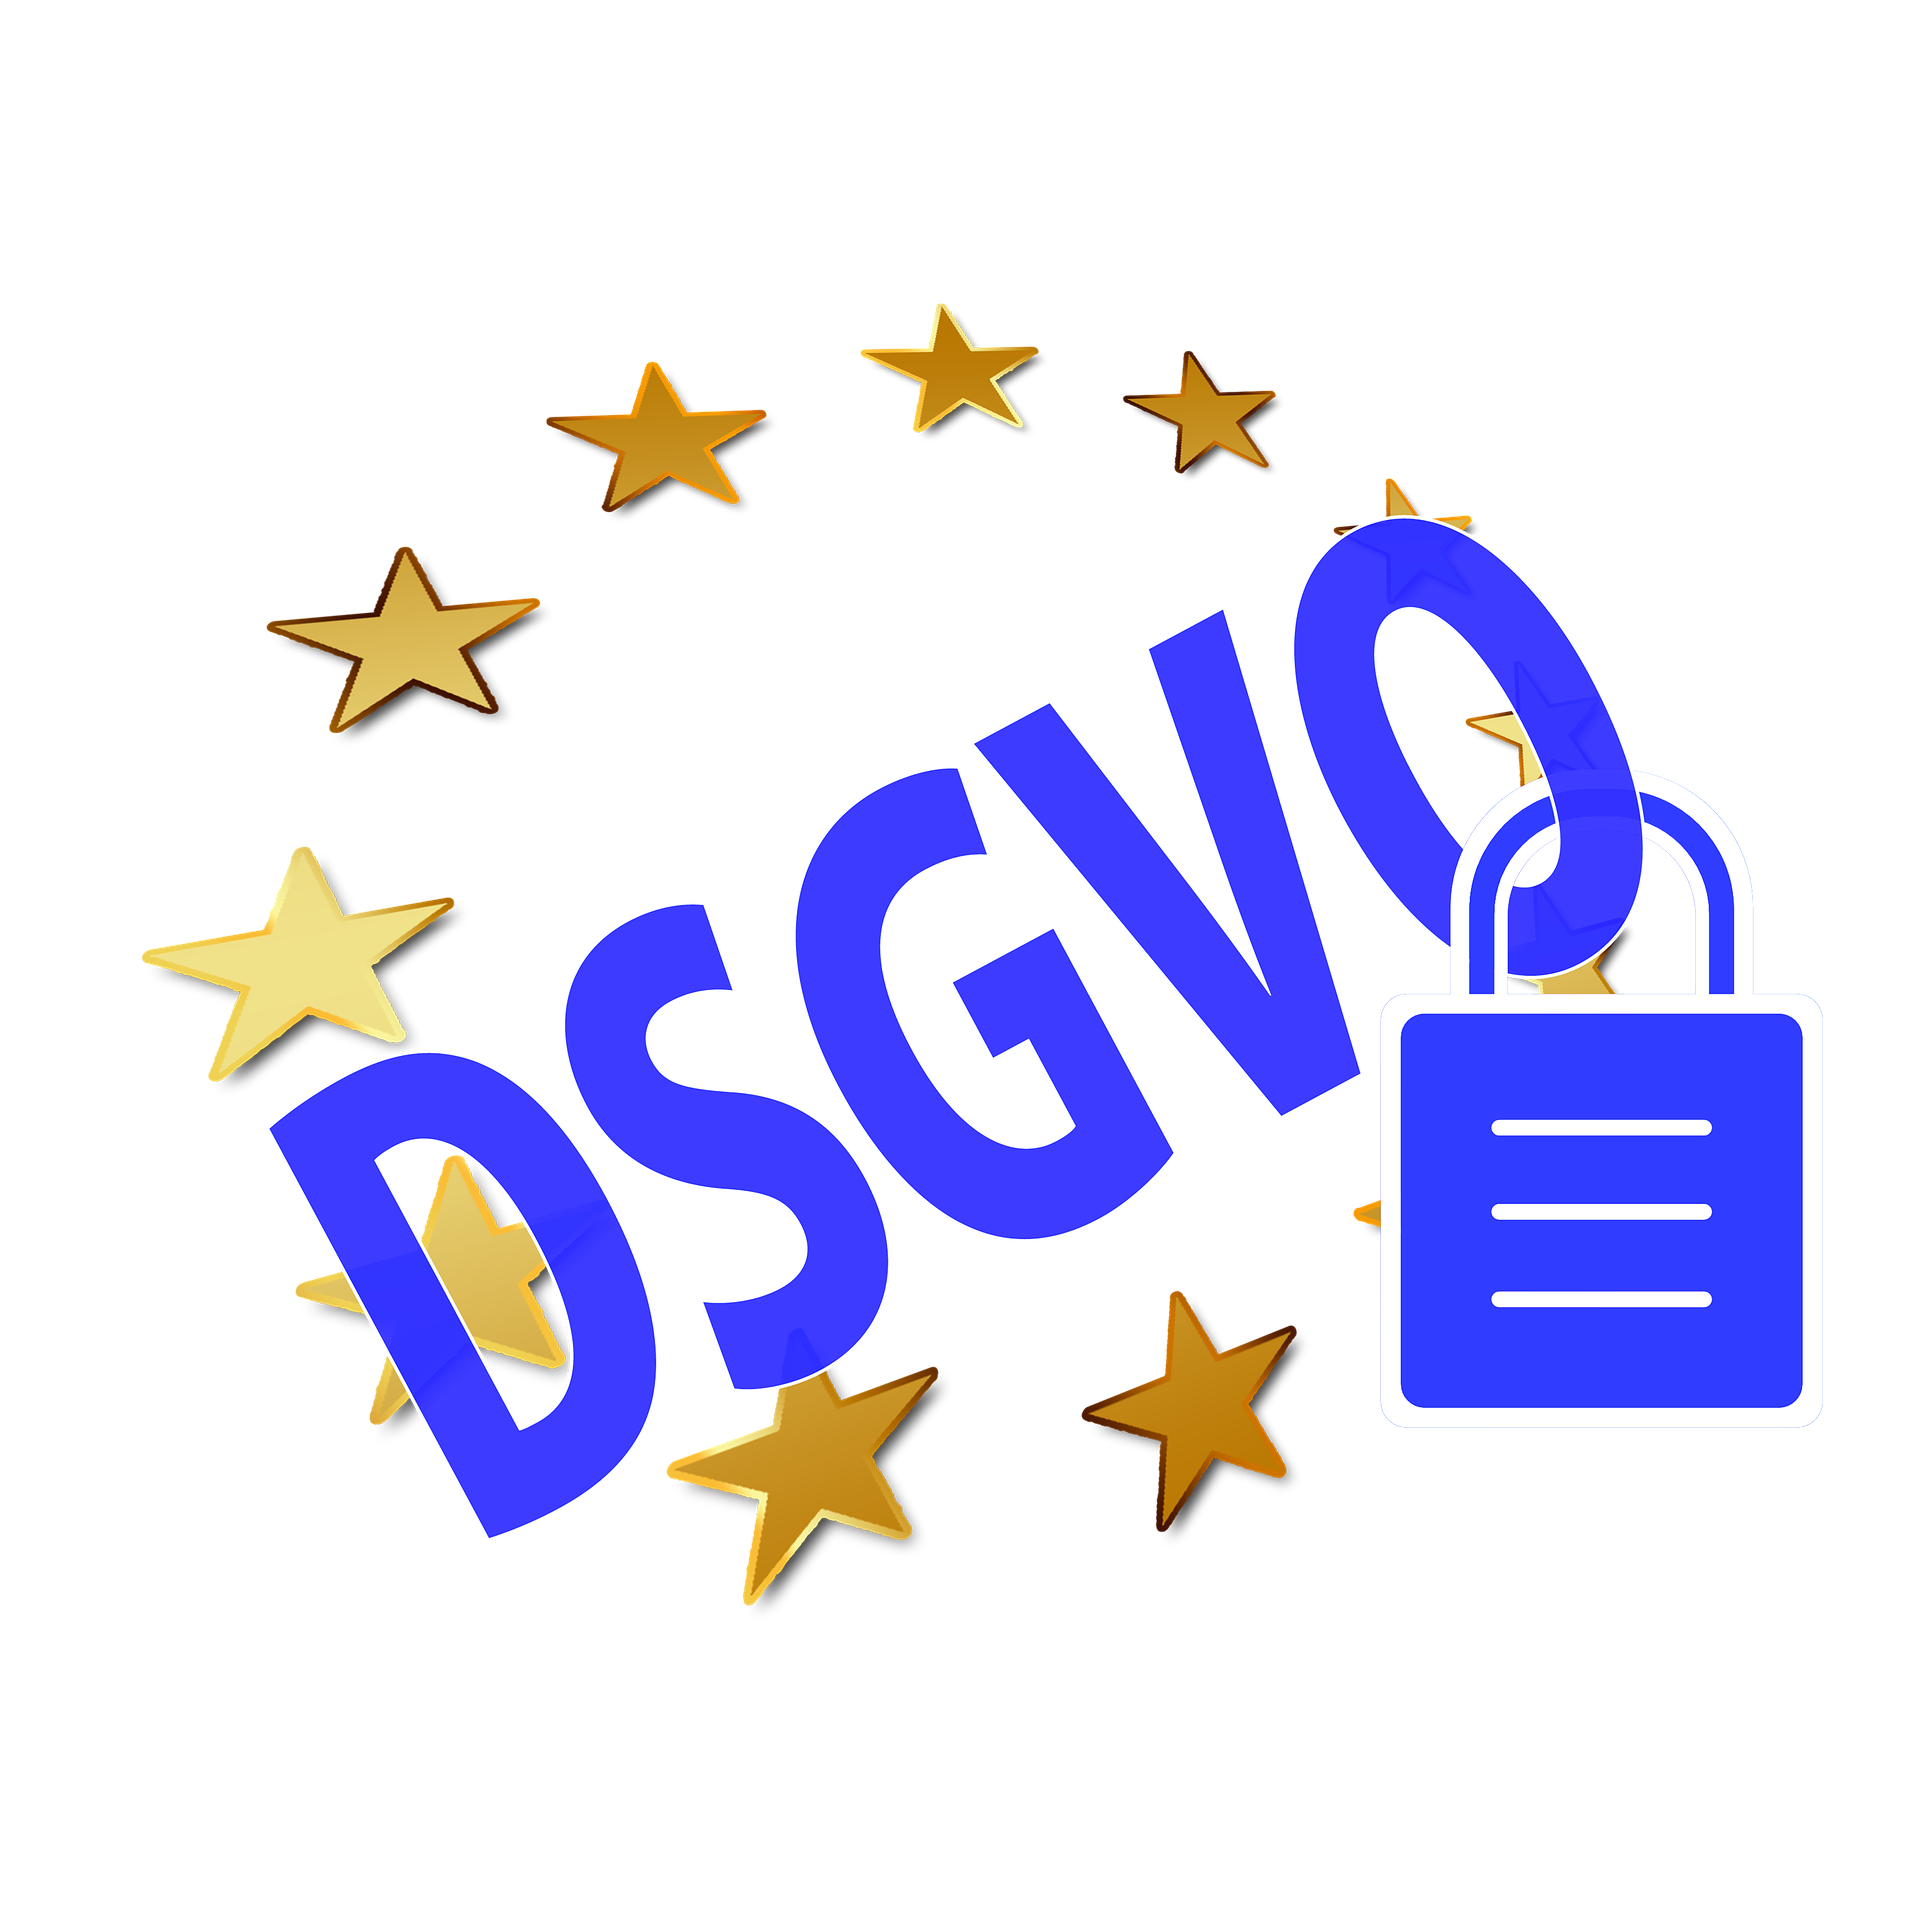 Lyhenne DSGVO, jonka ympärillä EU:n tähdet ja munalukko.